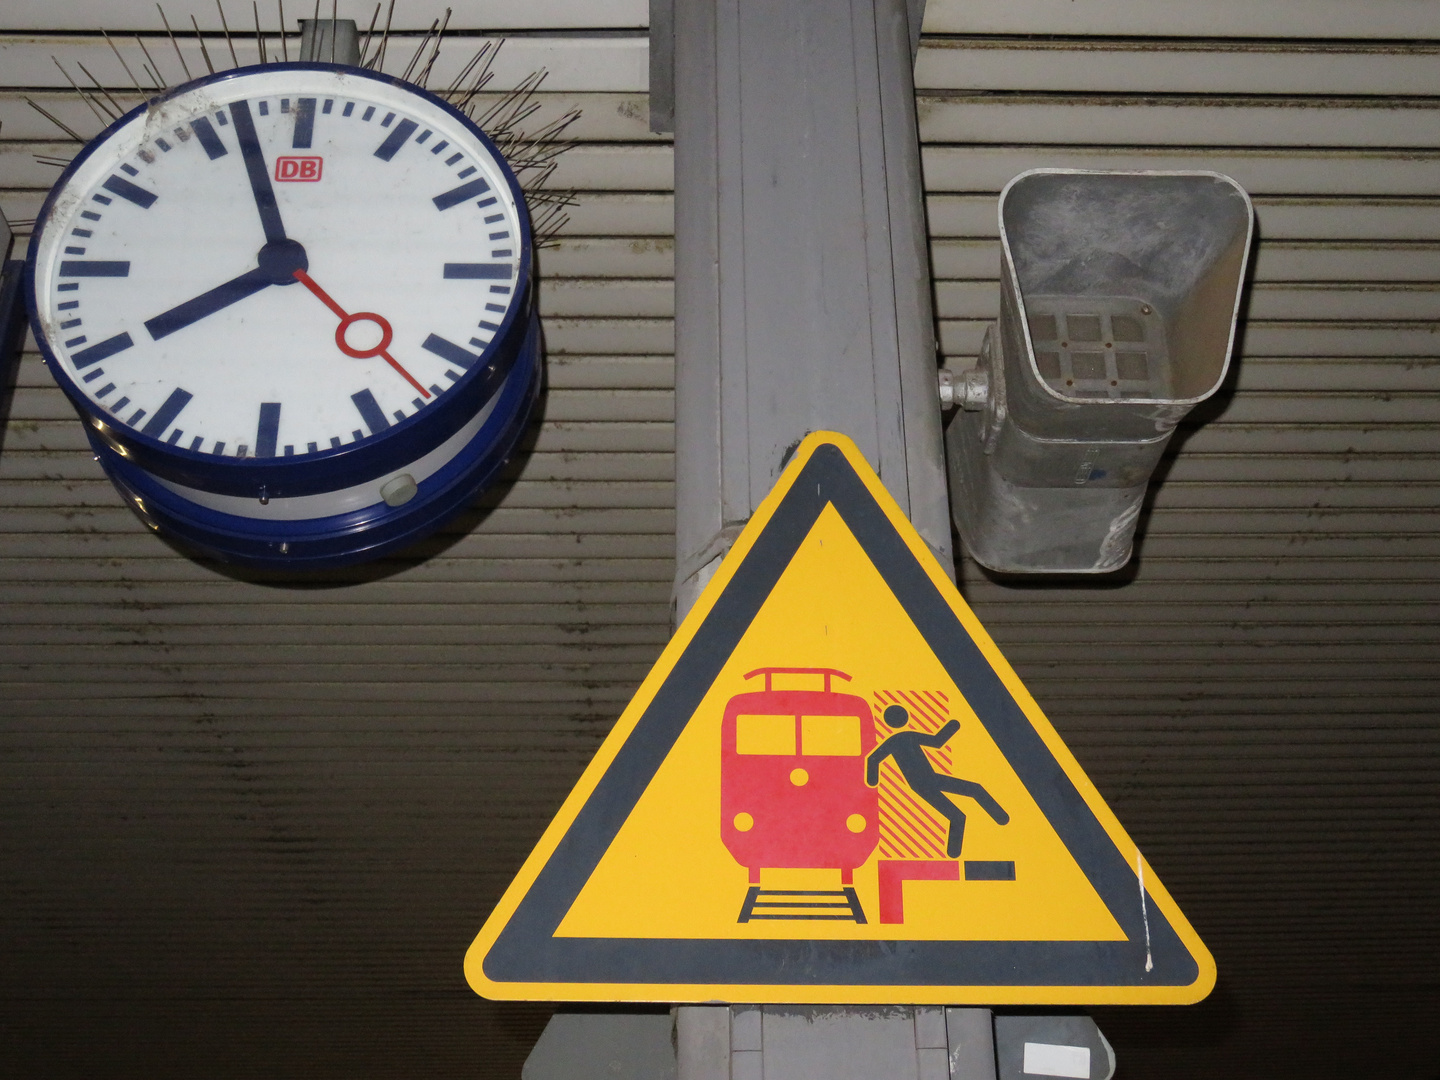 Bahnhof Haltestelle - Aushangfahrplan - Uhr